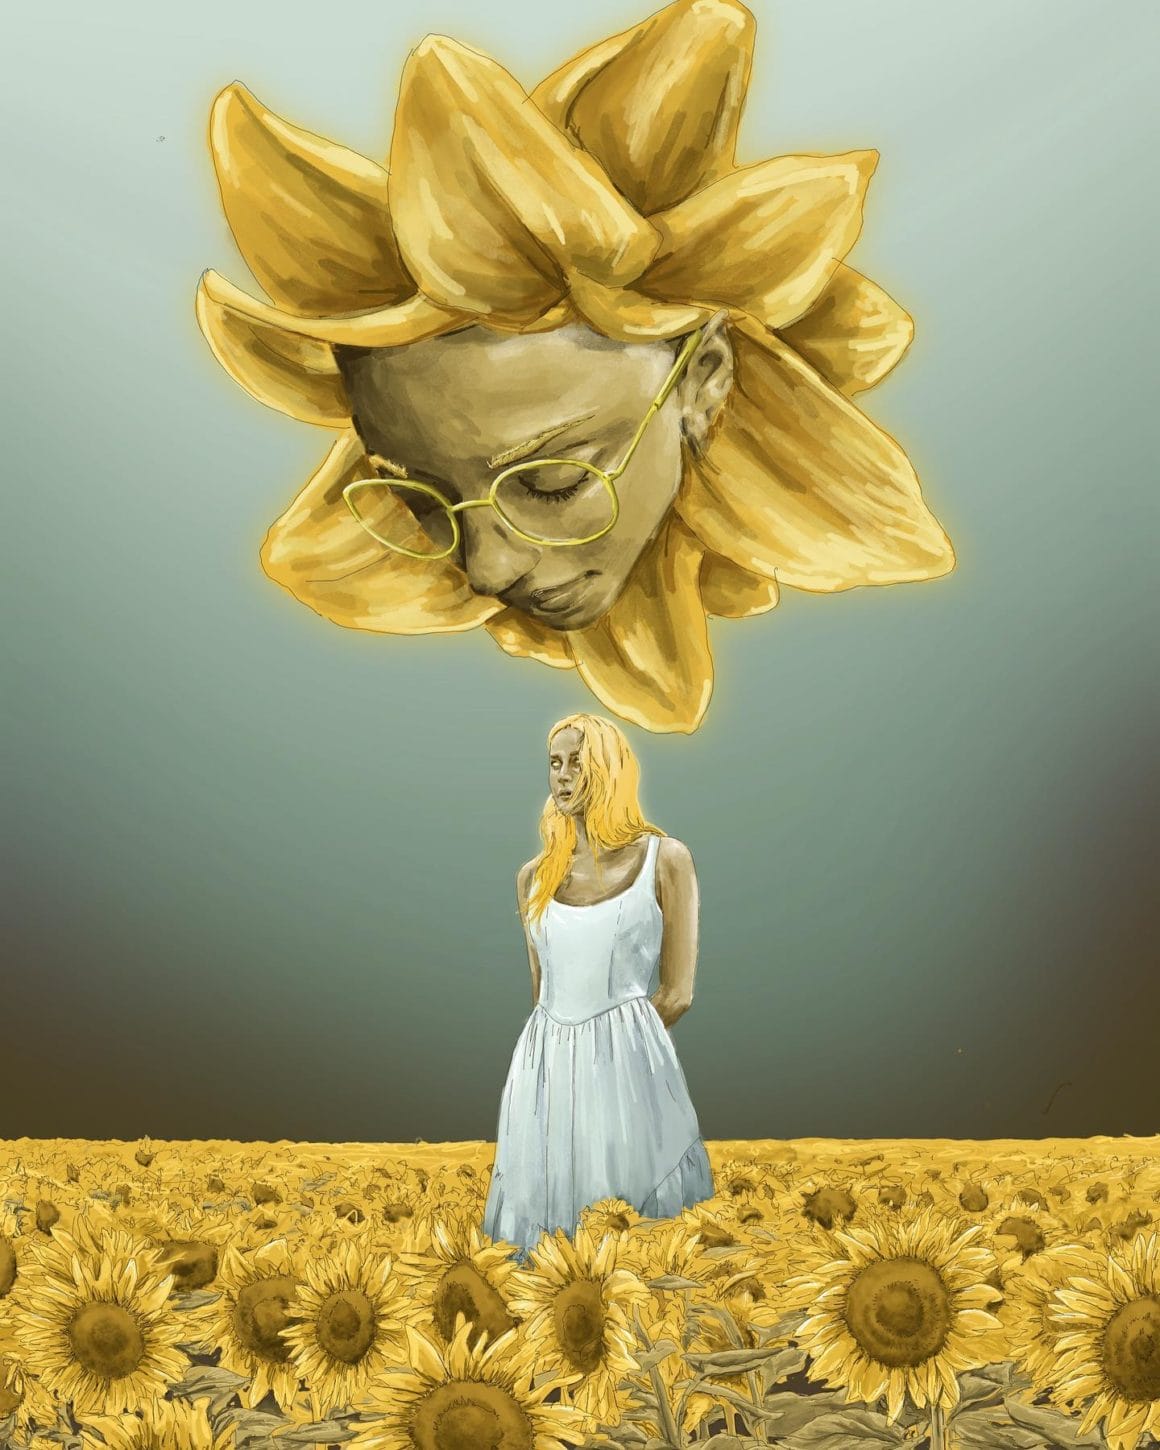 Une femme blonde vêtue d'une robe blanche est debout dans un champ de tournesol. Une fleur géante avec un visage au milieu l'observe. Oeuvre de Gingerale Arthaus.